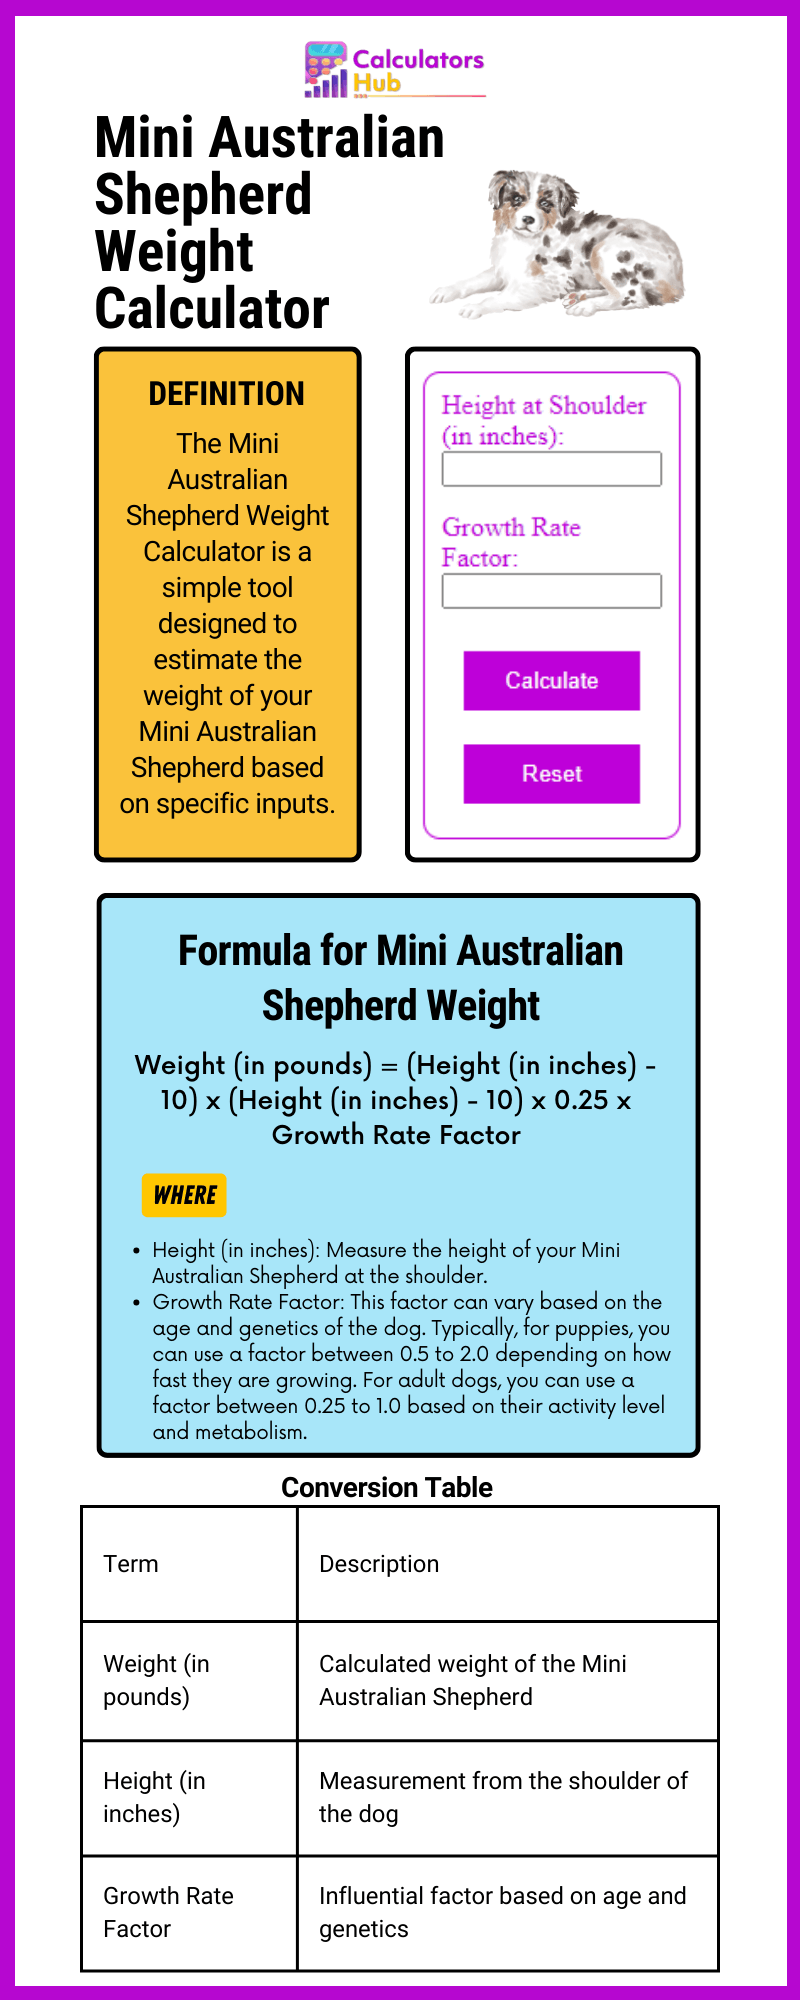 迷你澳大利亚牧羊犬体重计算器